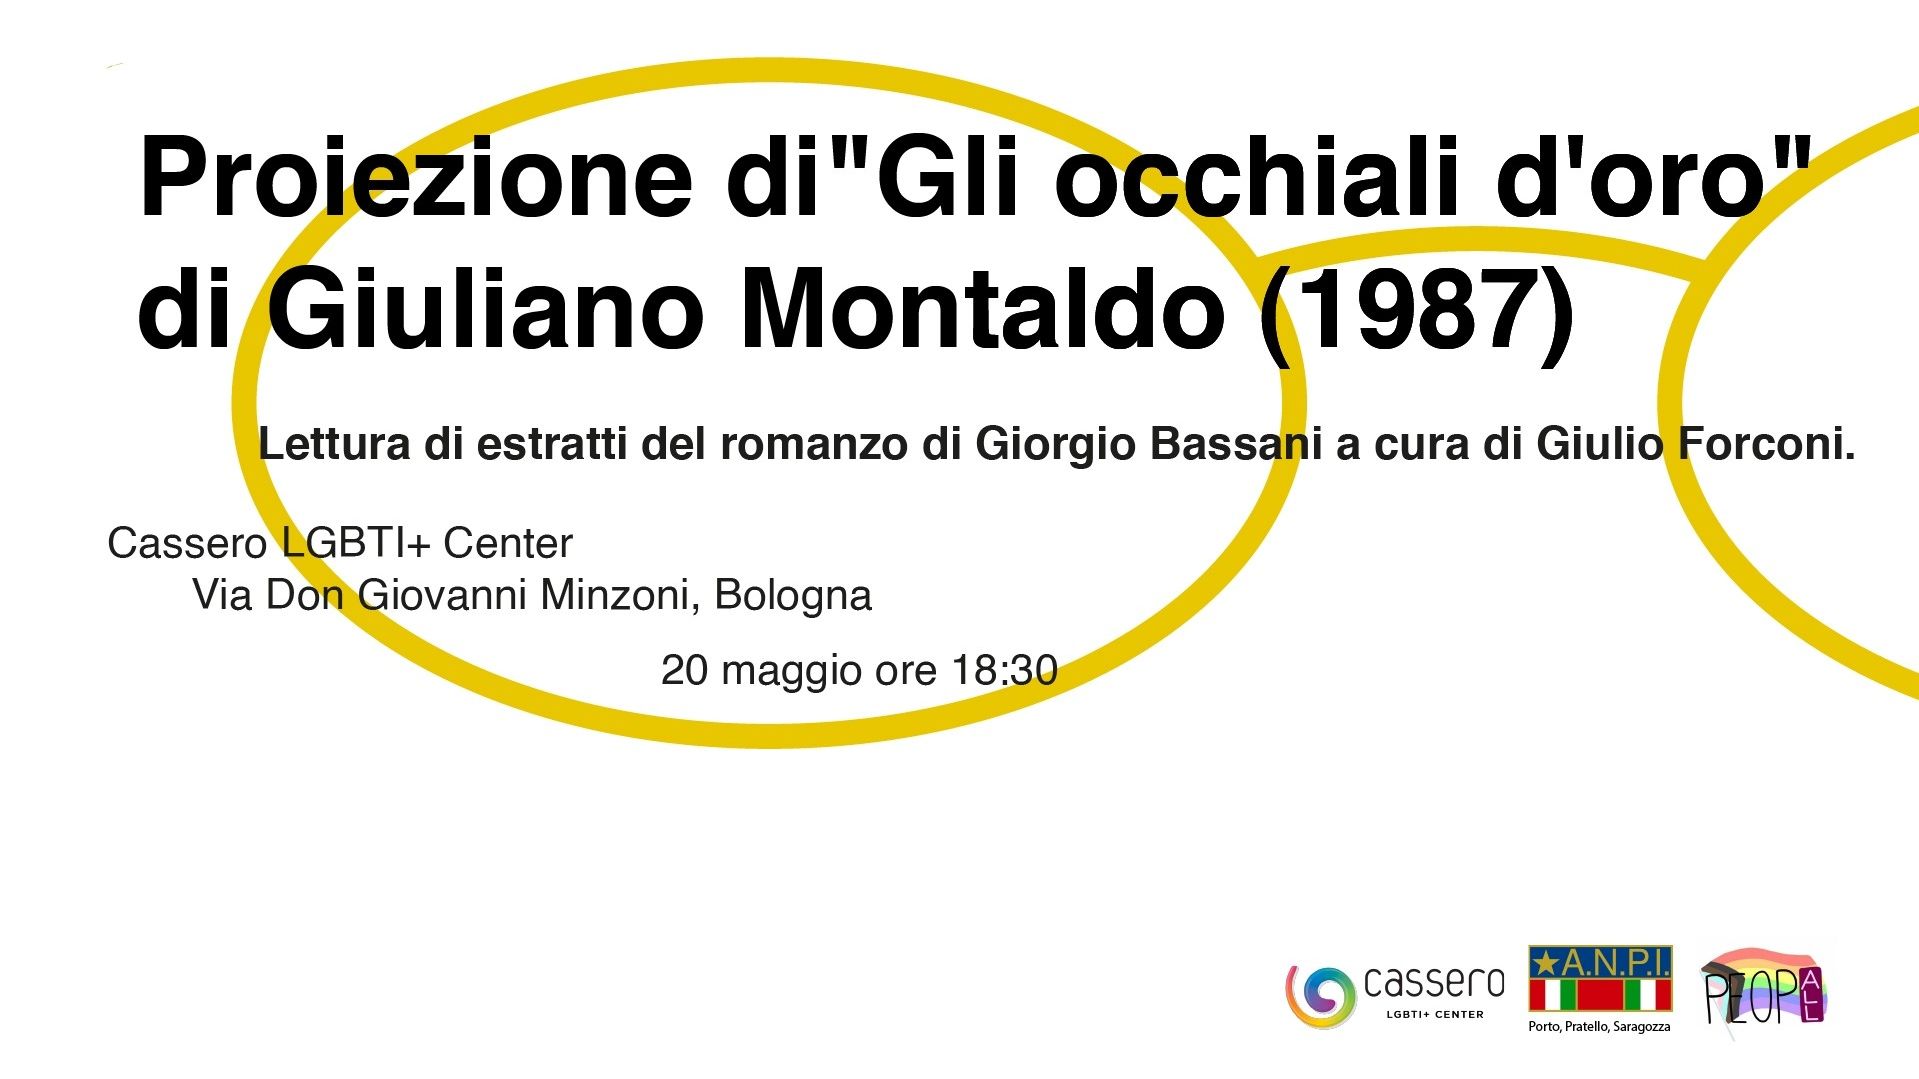 Proiezione di "Gli occhiali d'oro" di Giuliano Montaldo (1987)